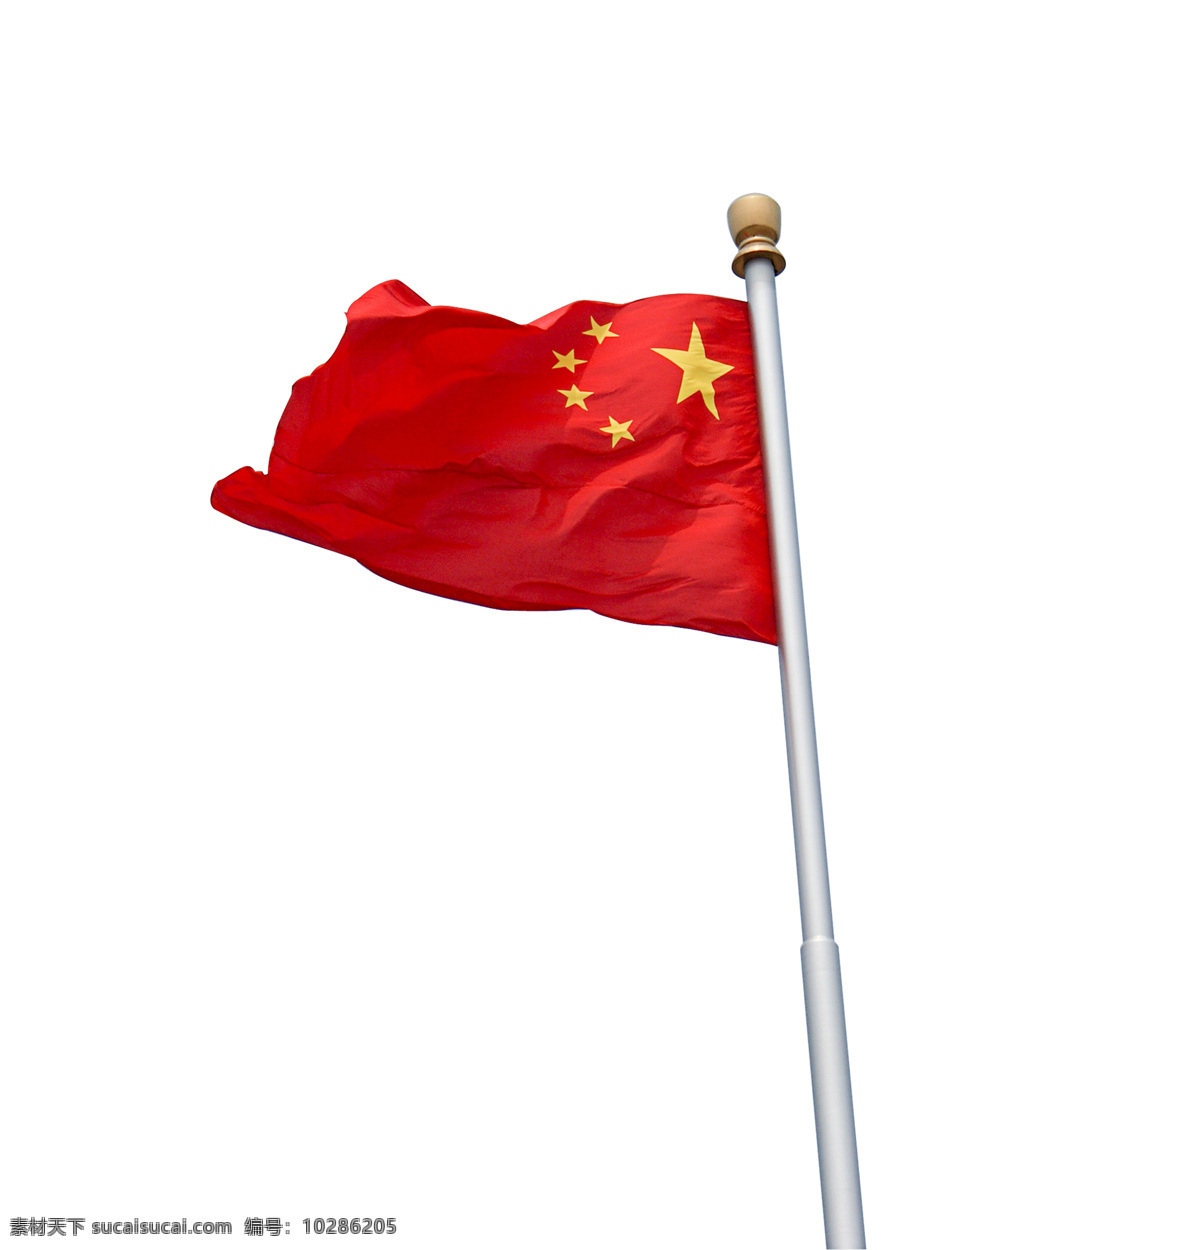 迎风 飘扬 五星红旗 高清 大图 中国 中华